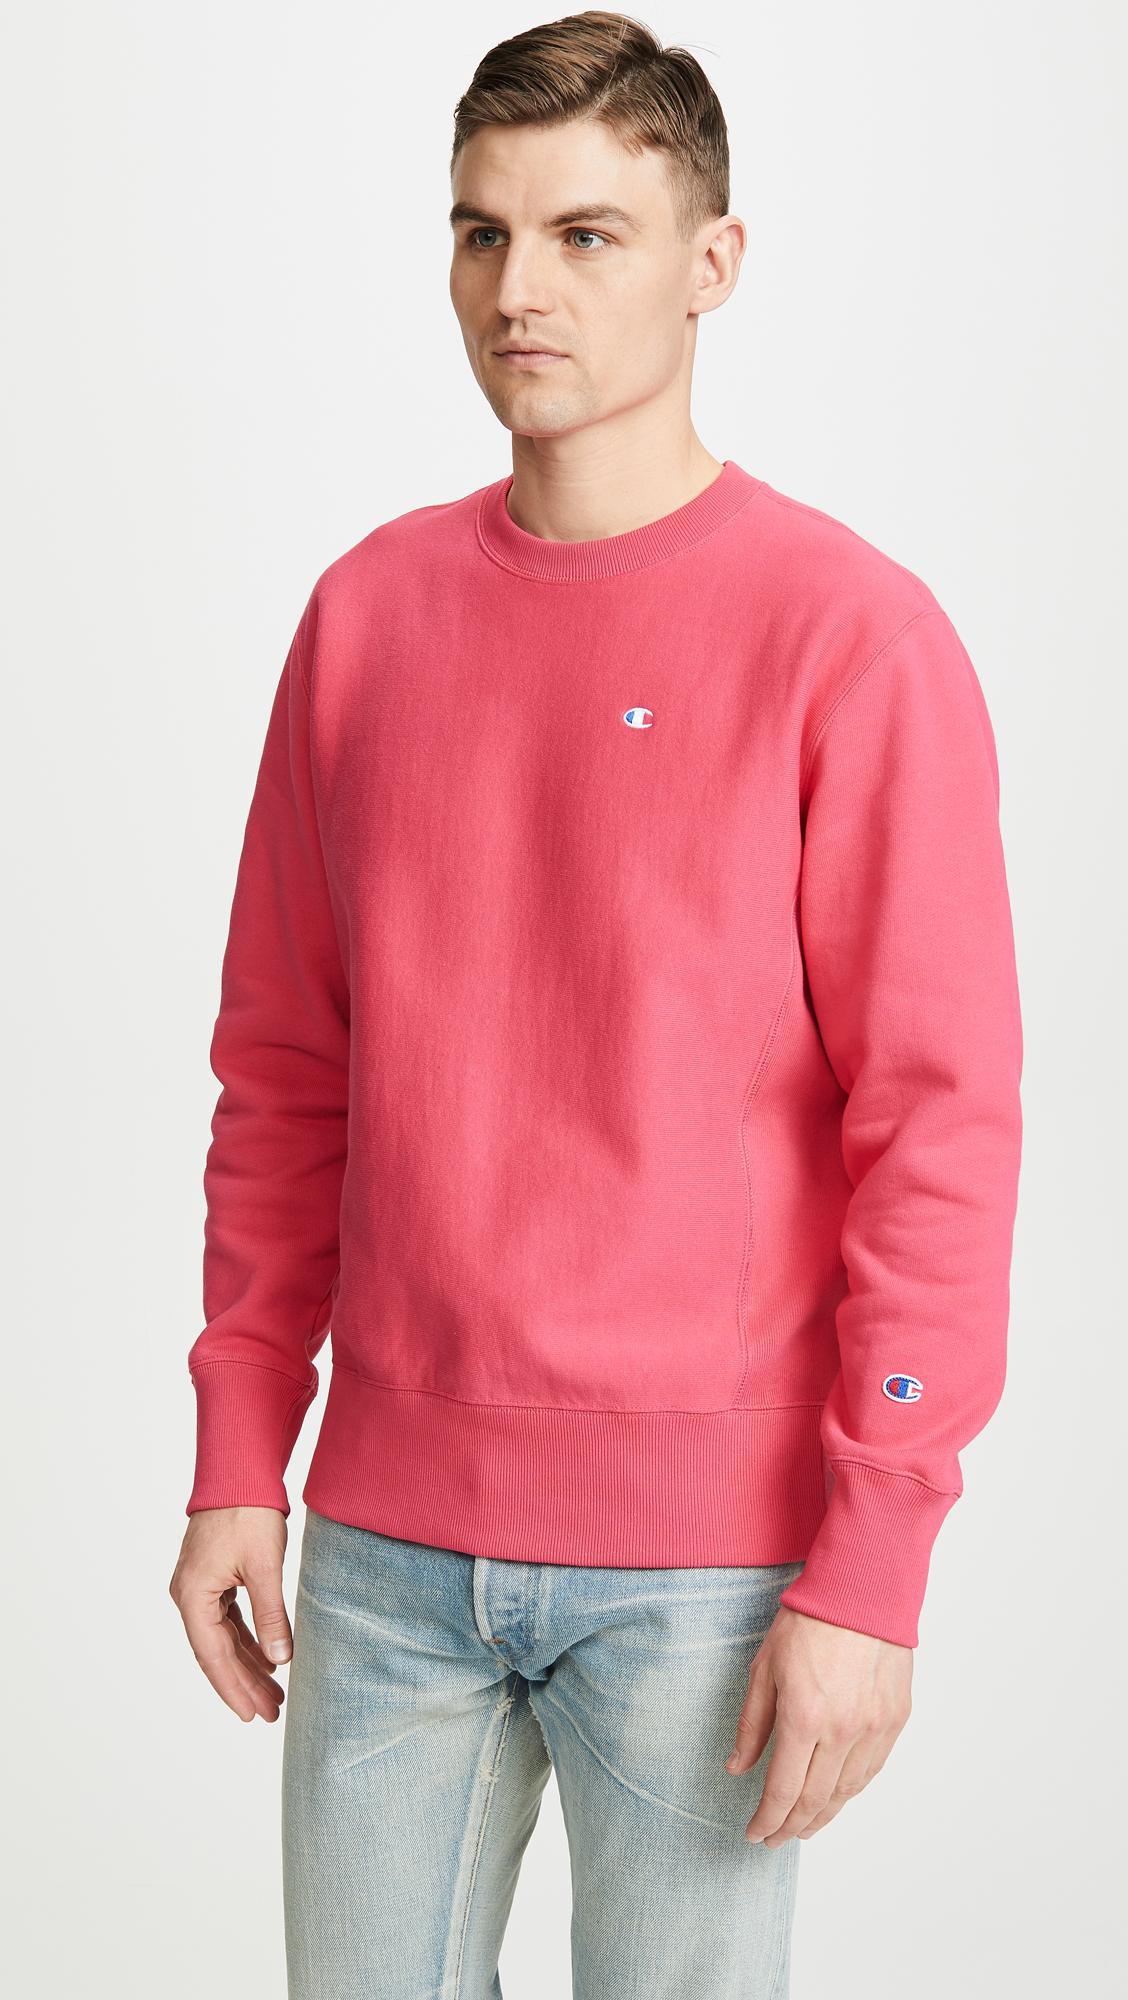 Champion Fleece Crew Neck Sweatshirt in Pink for Men - Lyst